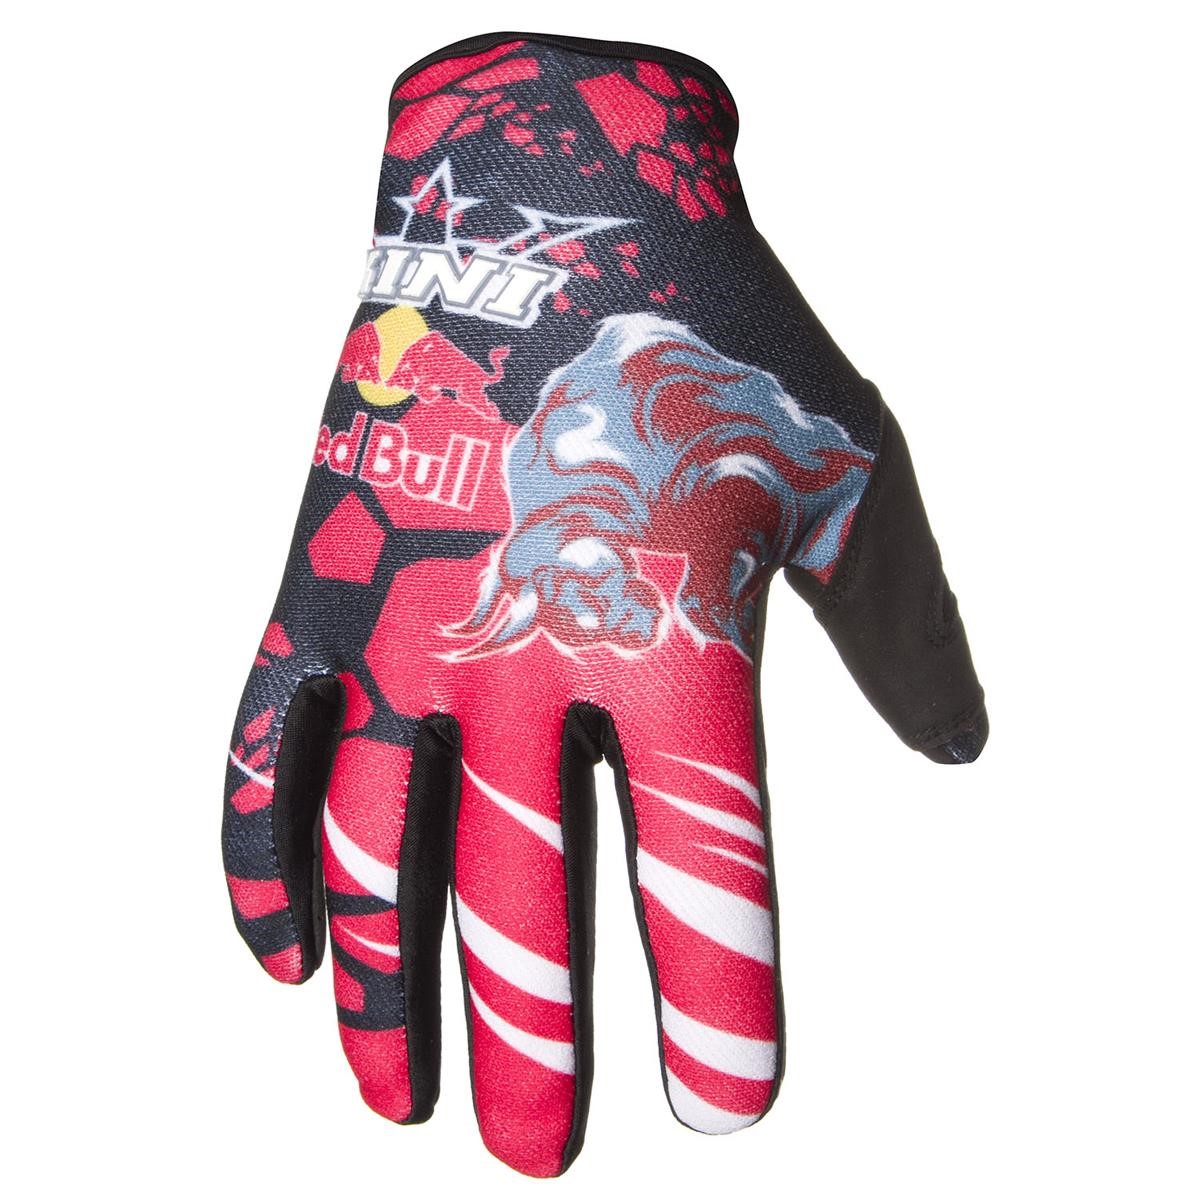 Kini Red Bull Handschuhe Revolution Rot/Schwarz